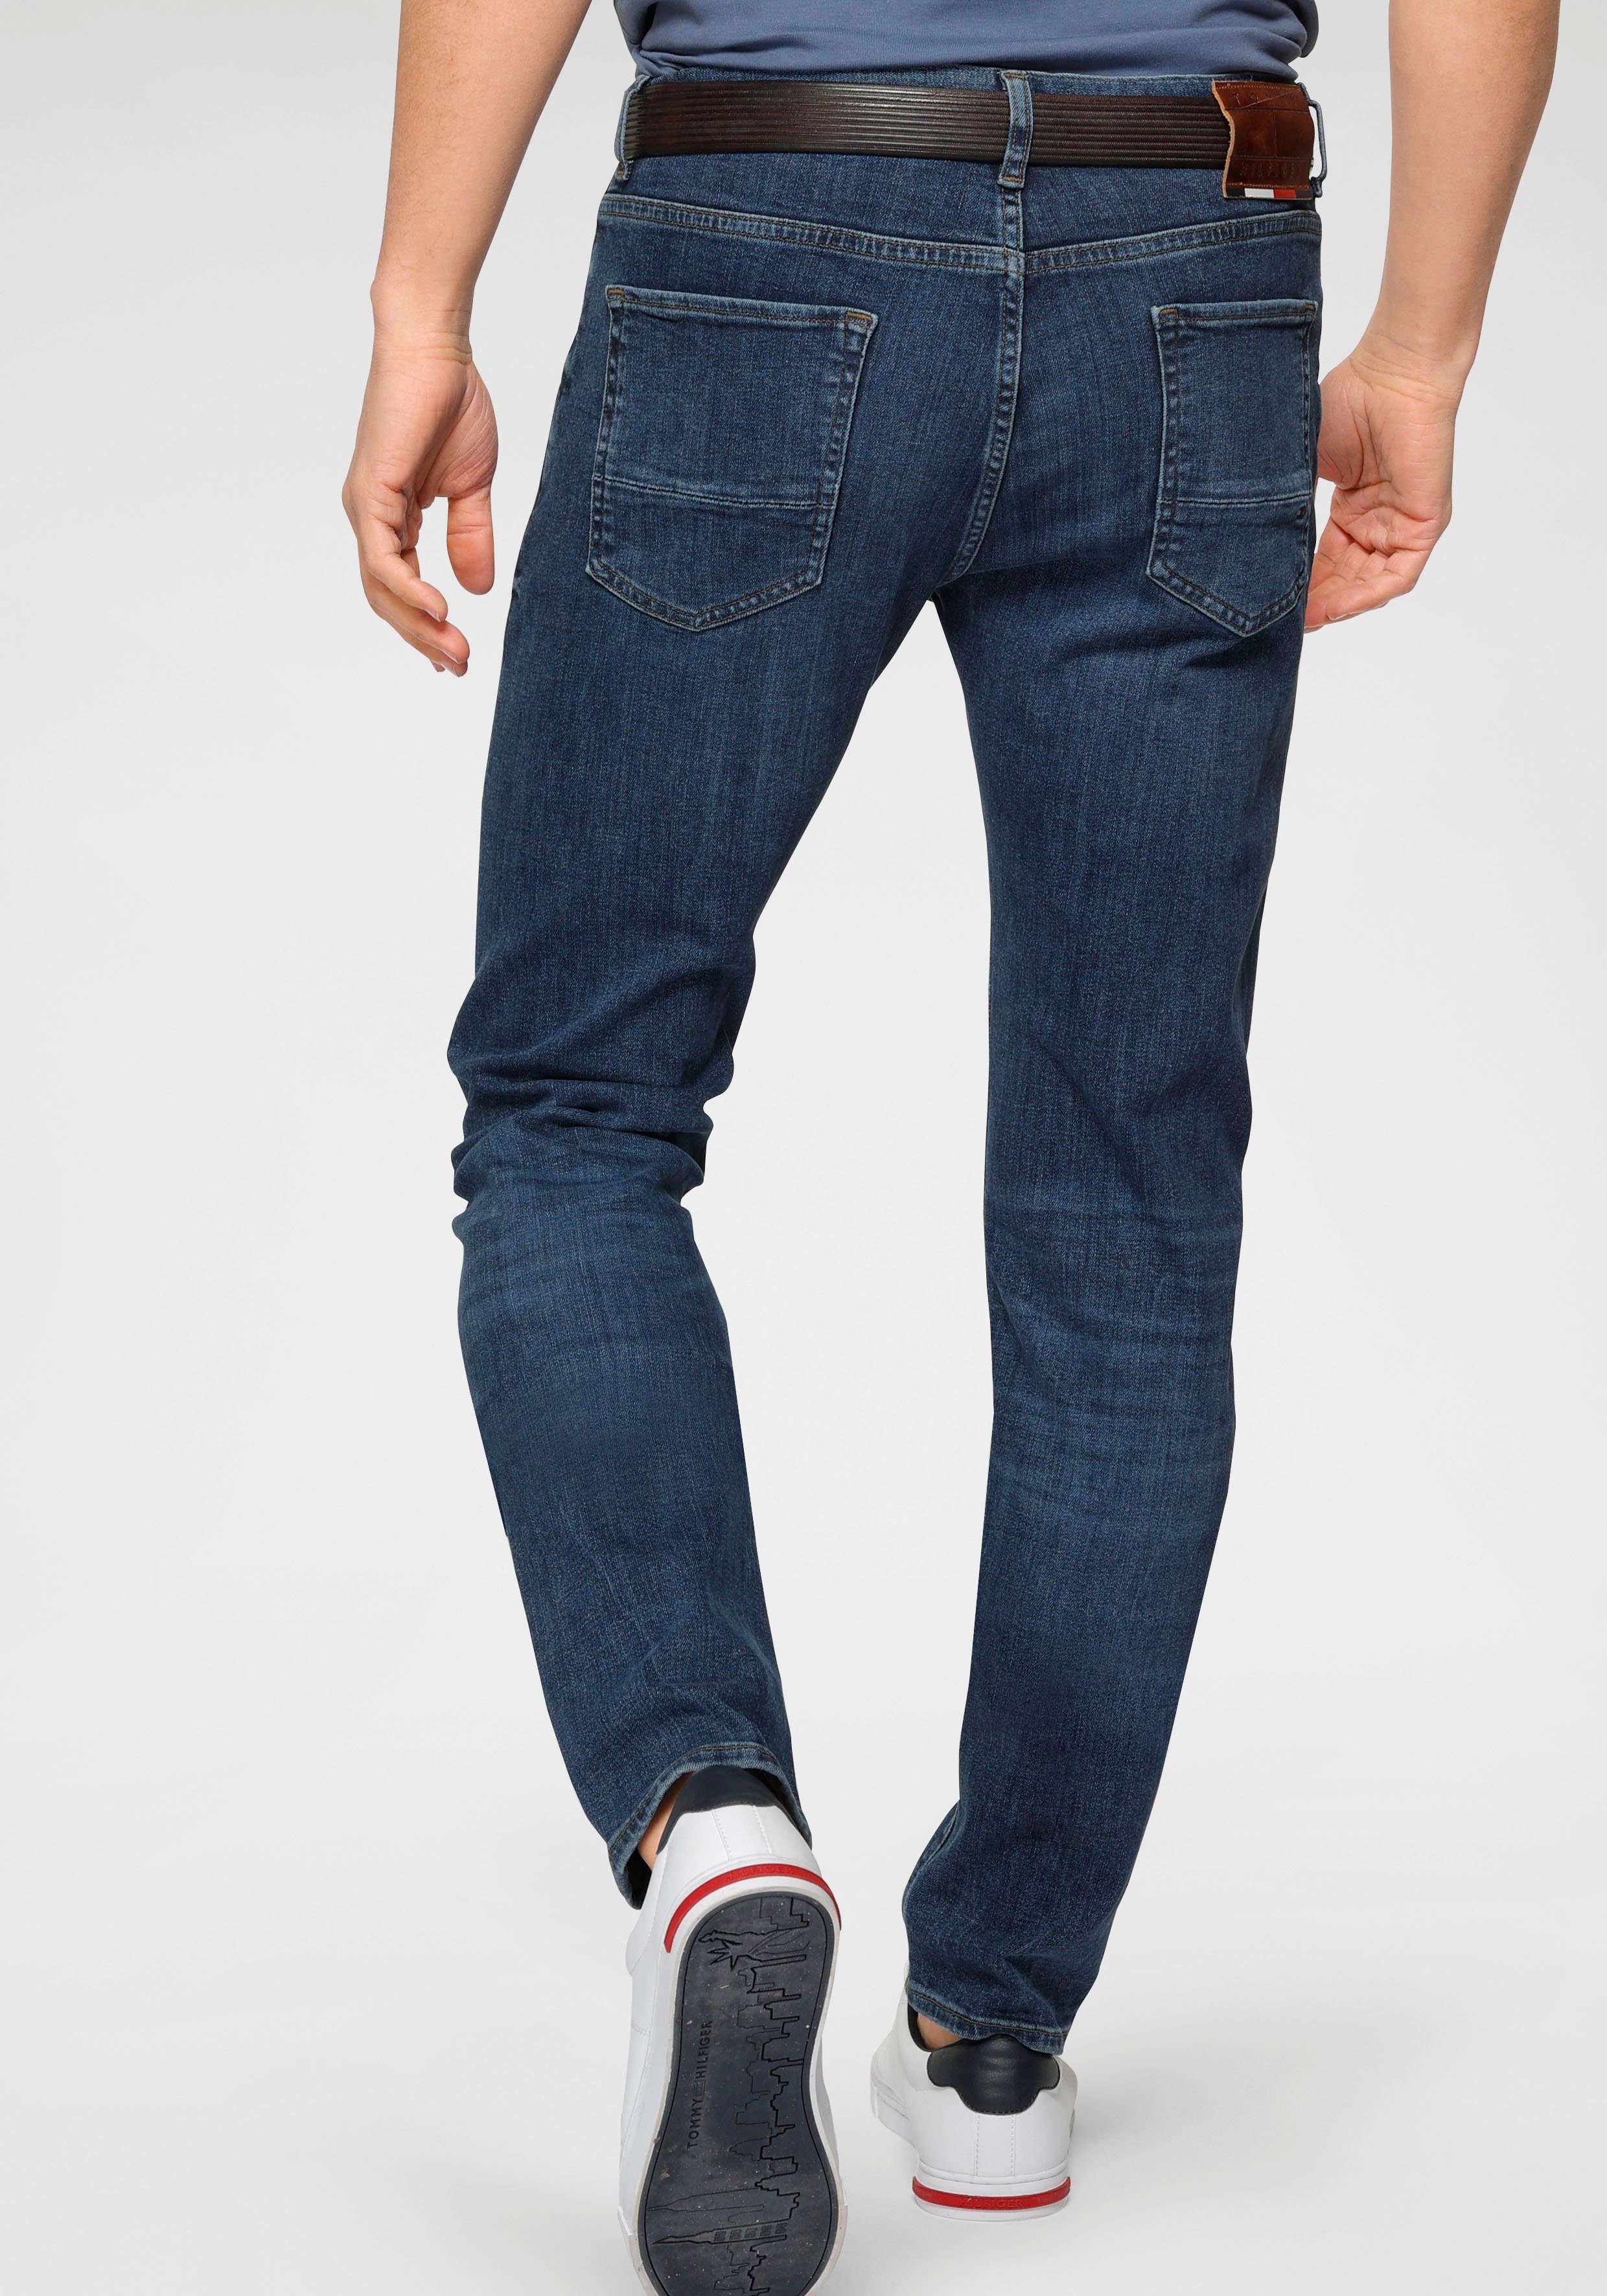 Hilfiger extra Stretch, Tommy Slim-fit-Jeans indigo mit bequem Bleecker oregon Baumwoll-Denim